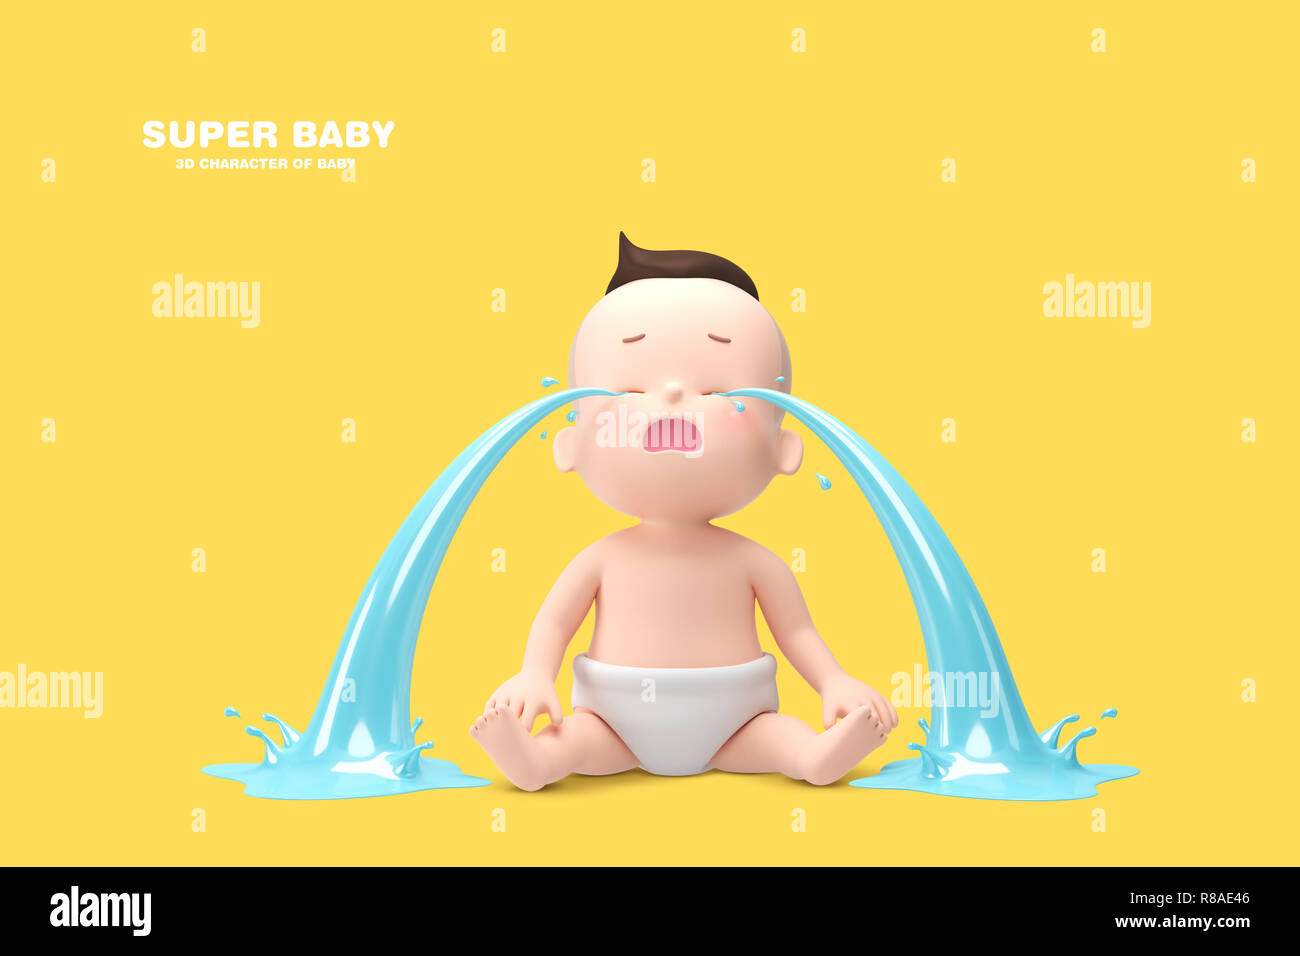 Super baby concetto, 3D carattere del bambino. 013 Foto Stock